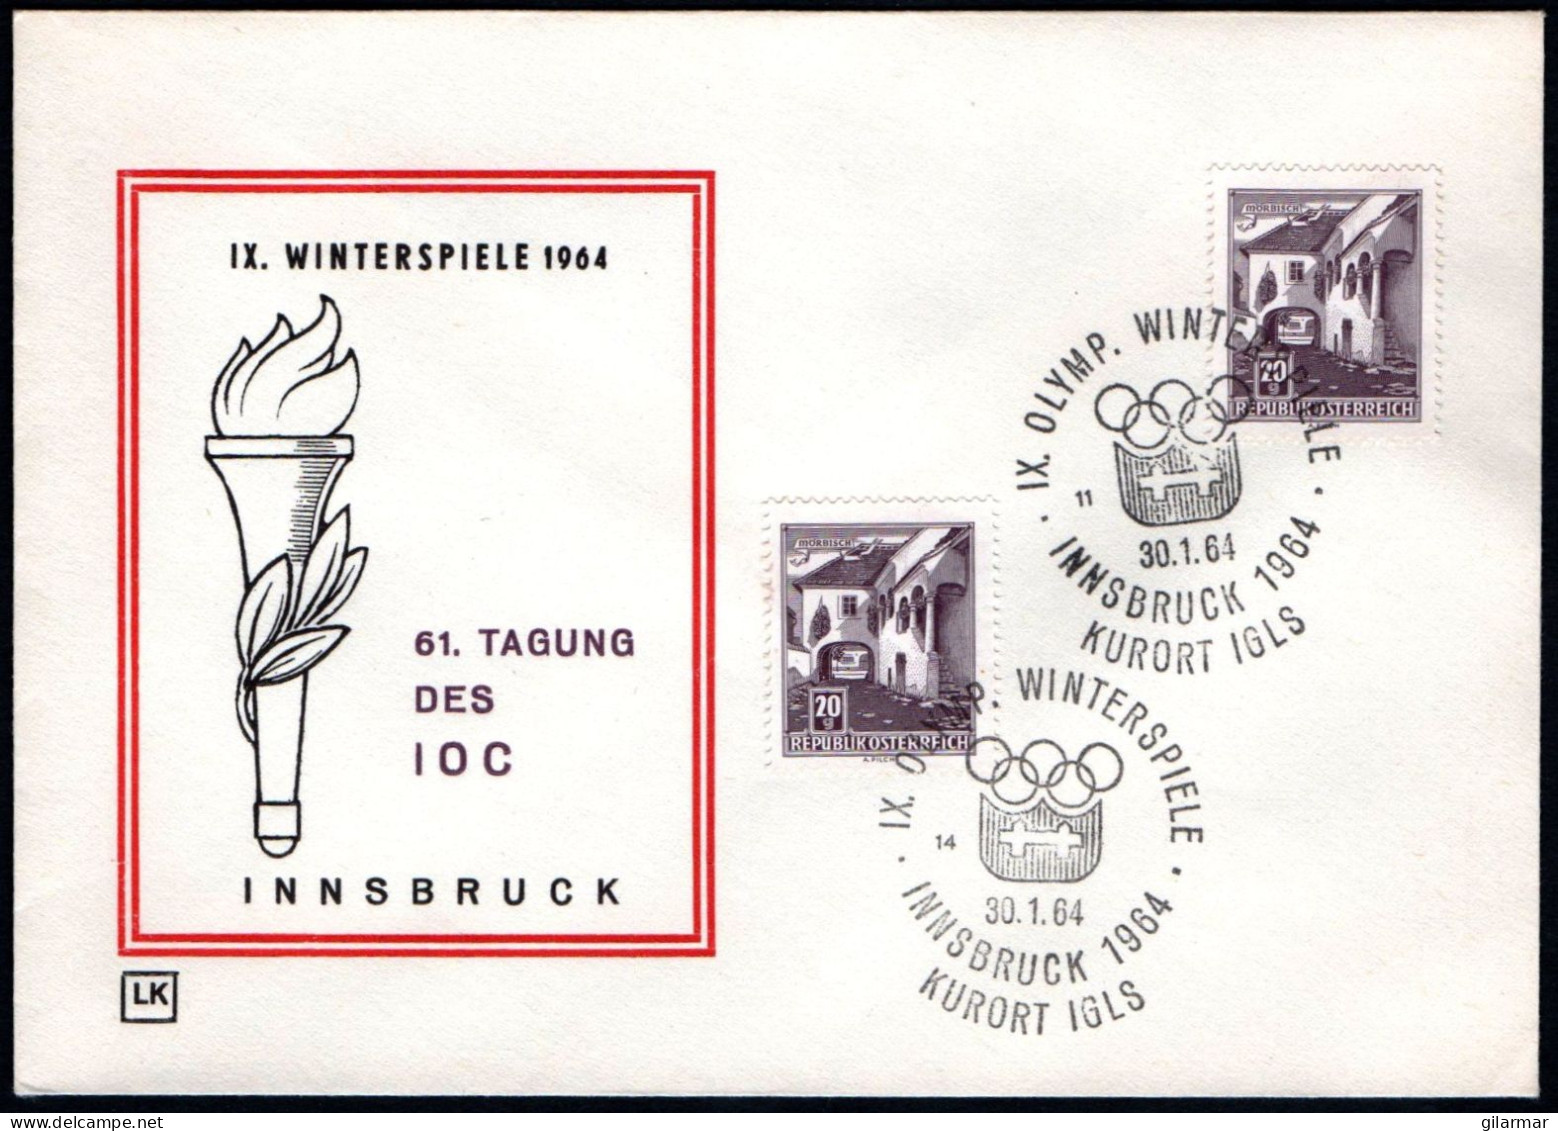 AUSTRIA KURORT IGLS 1964 - IX OLYMPIC WINTER GAMES - INNSBRUCK '64 - CANCELS # 14 & 11 - G - Winter 1964: Innsbruck